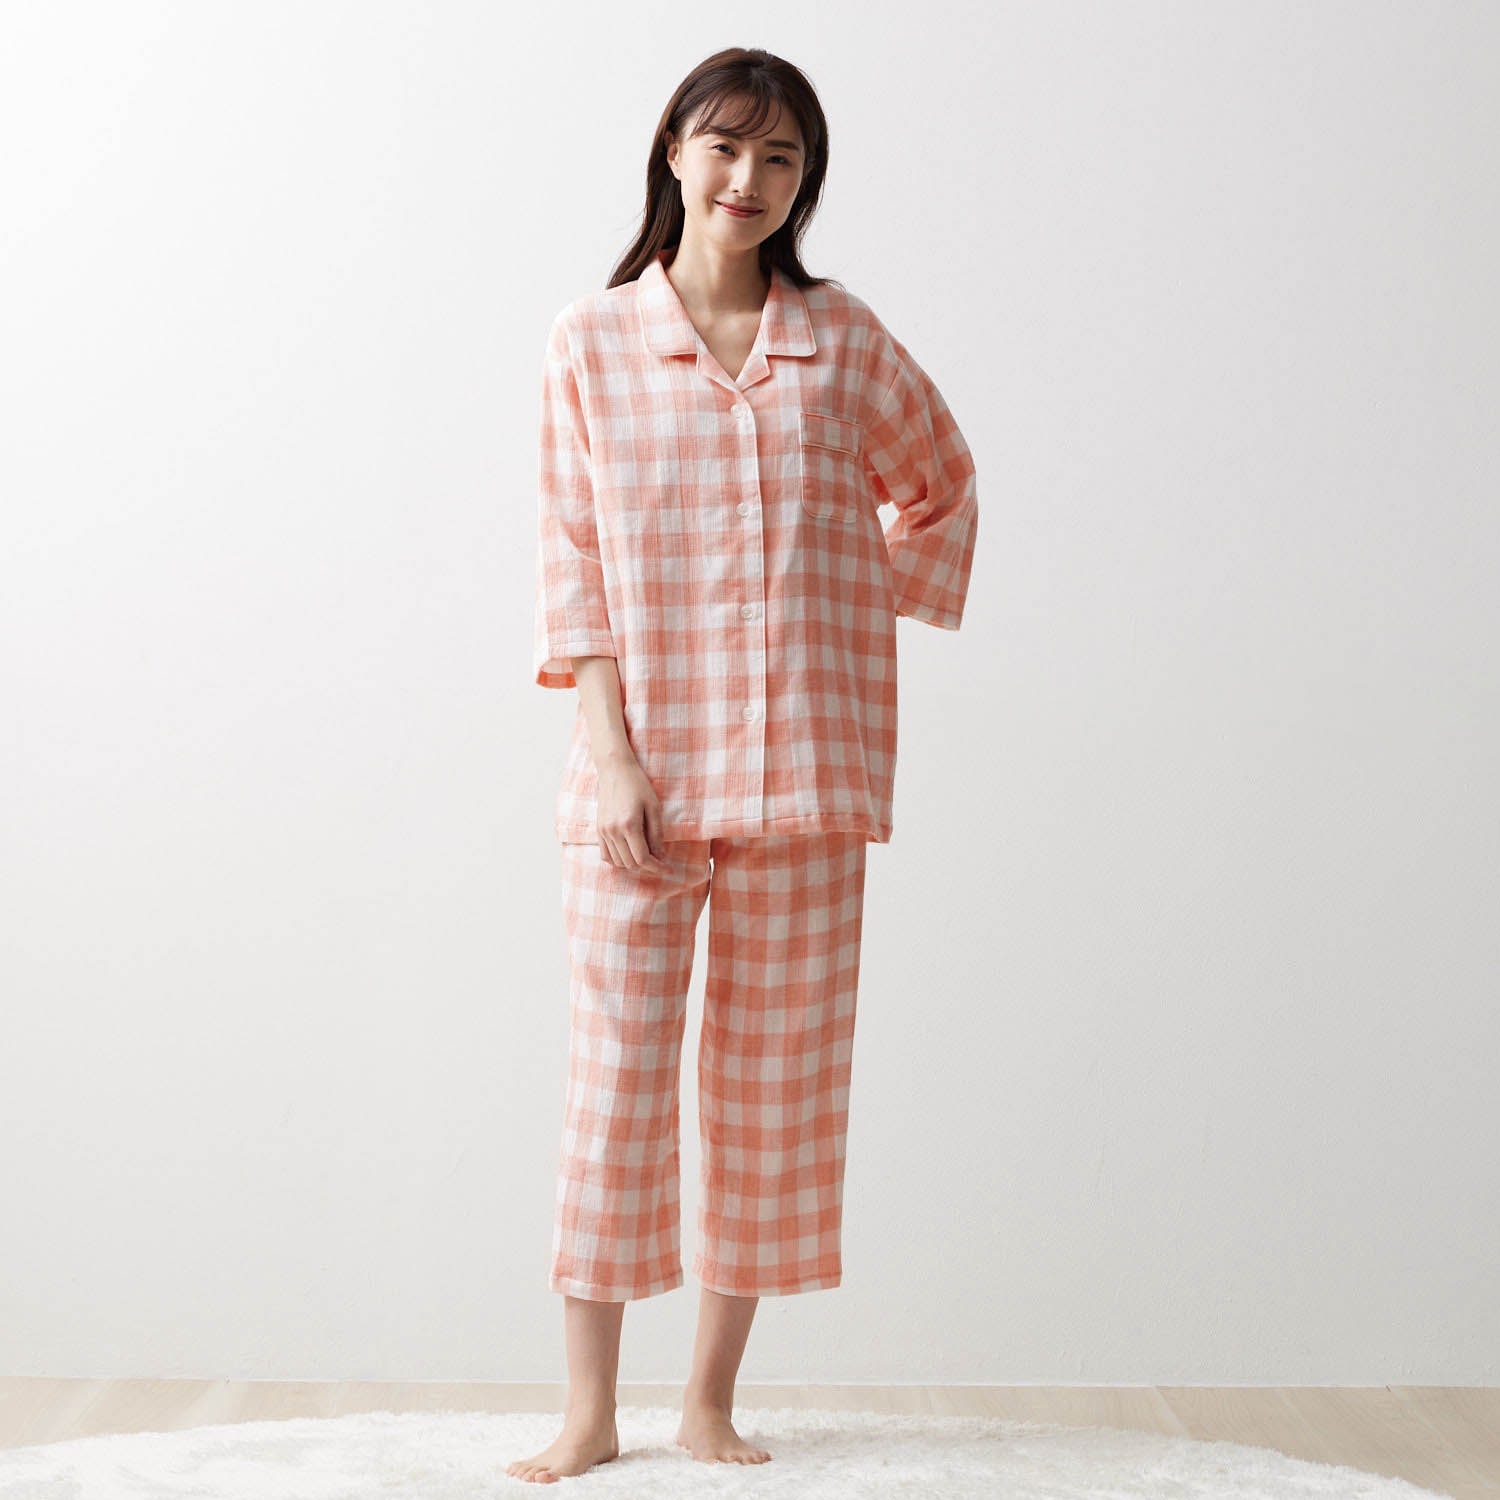 通販生活 LOFTY ガーゼの八分袖パジャマ M-L 日本製 藤色-